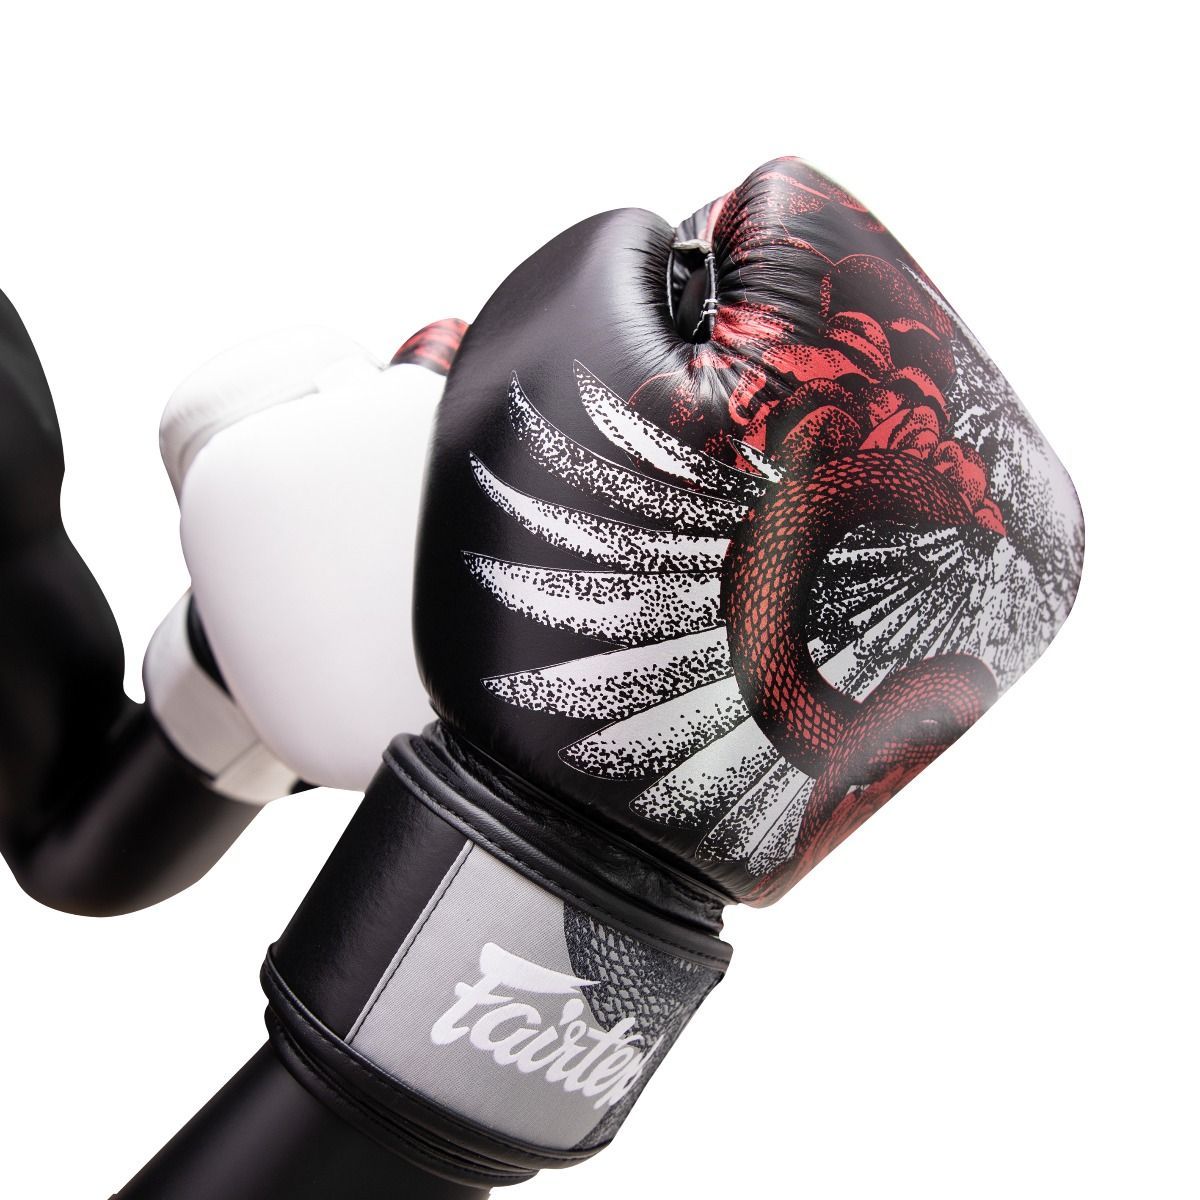 FAIRTEX BGV24 The Beauty Of Survival - Limited Edition Gloves